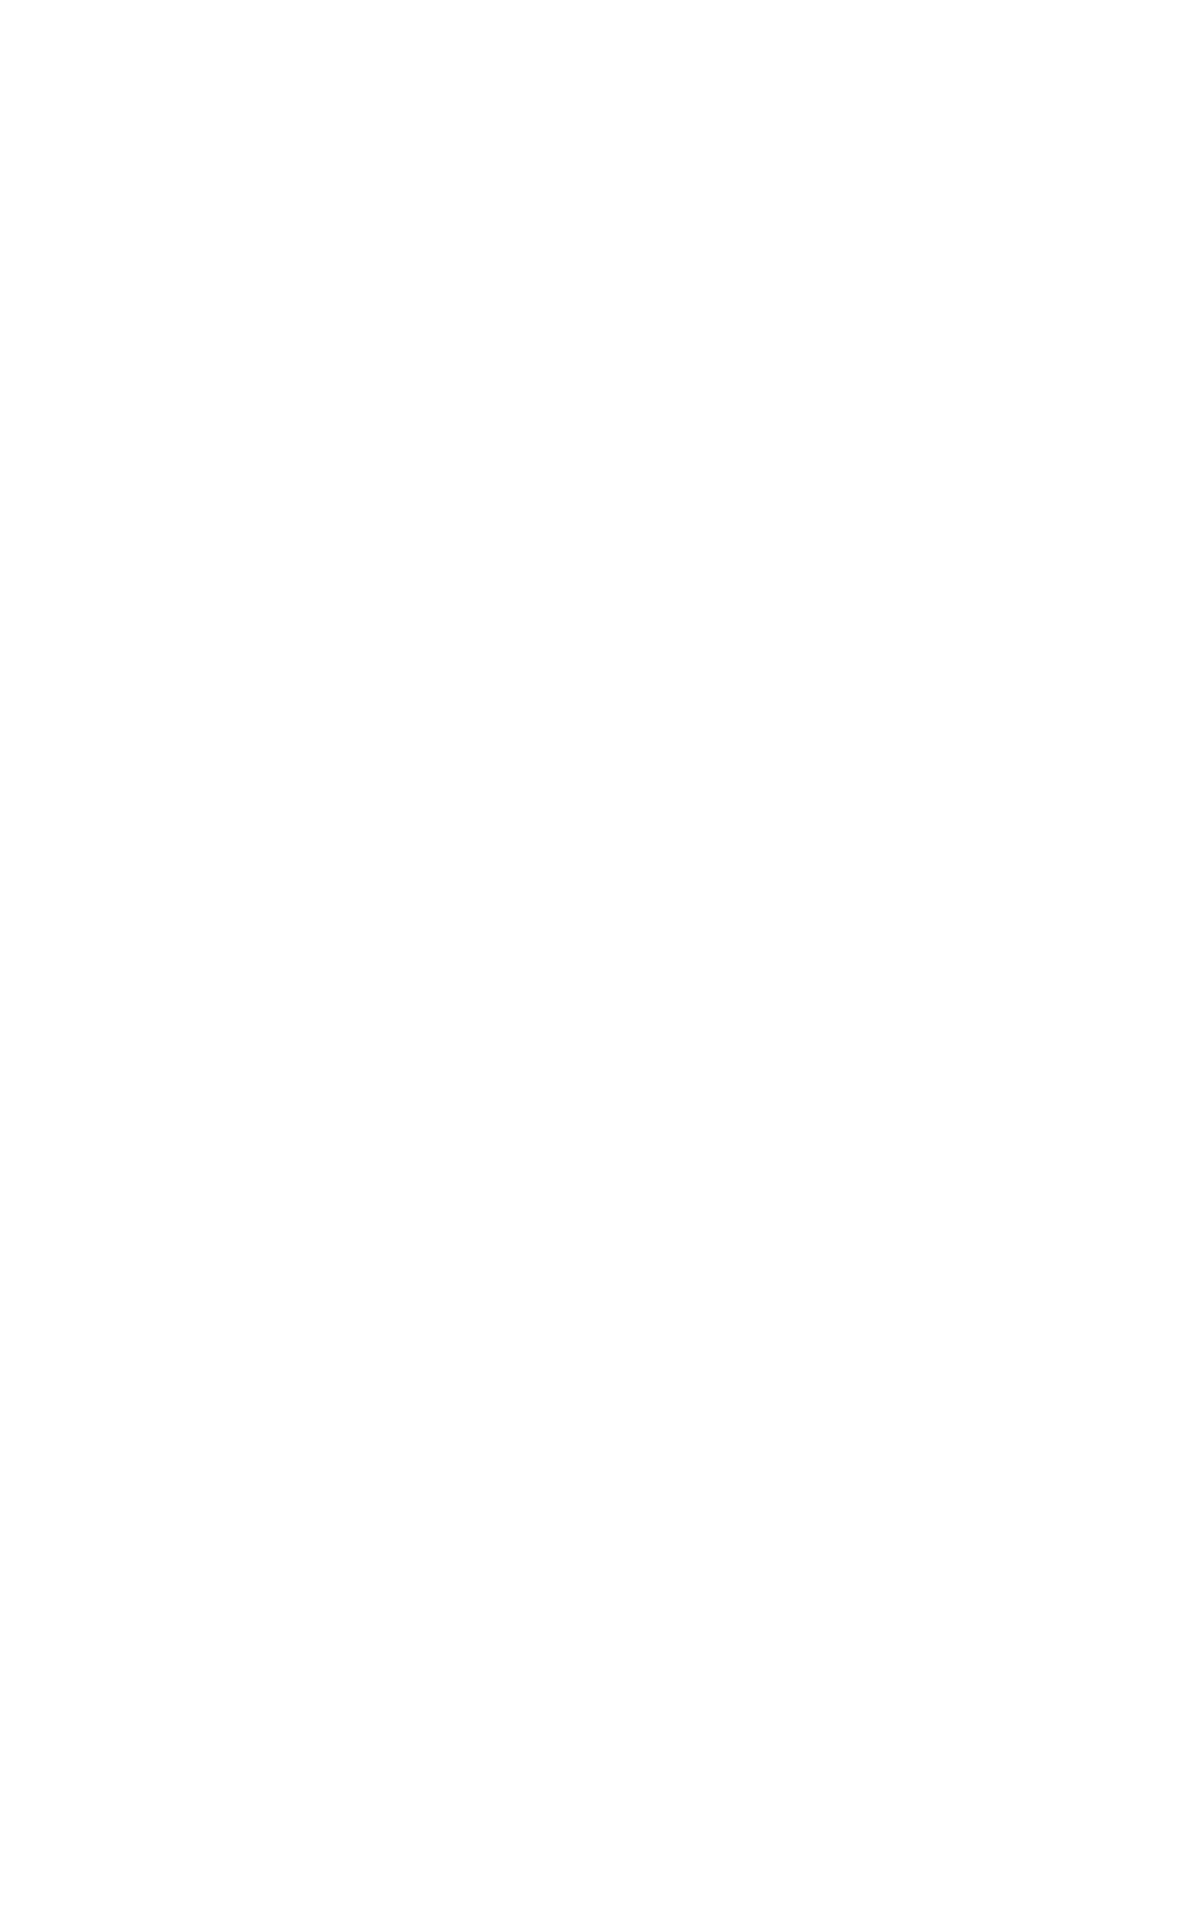 type specimen: hidden gems